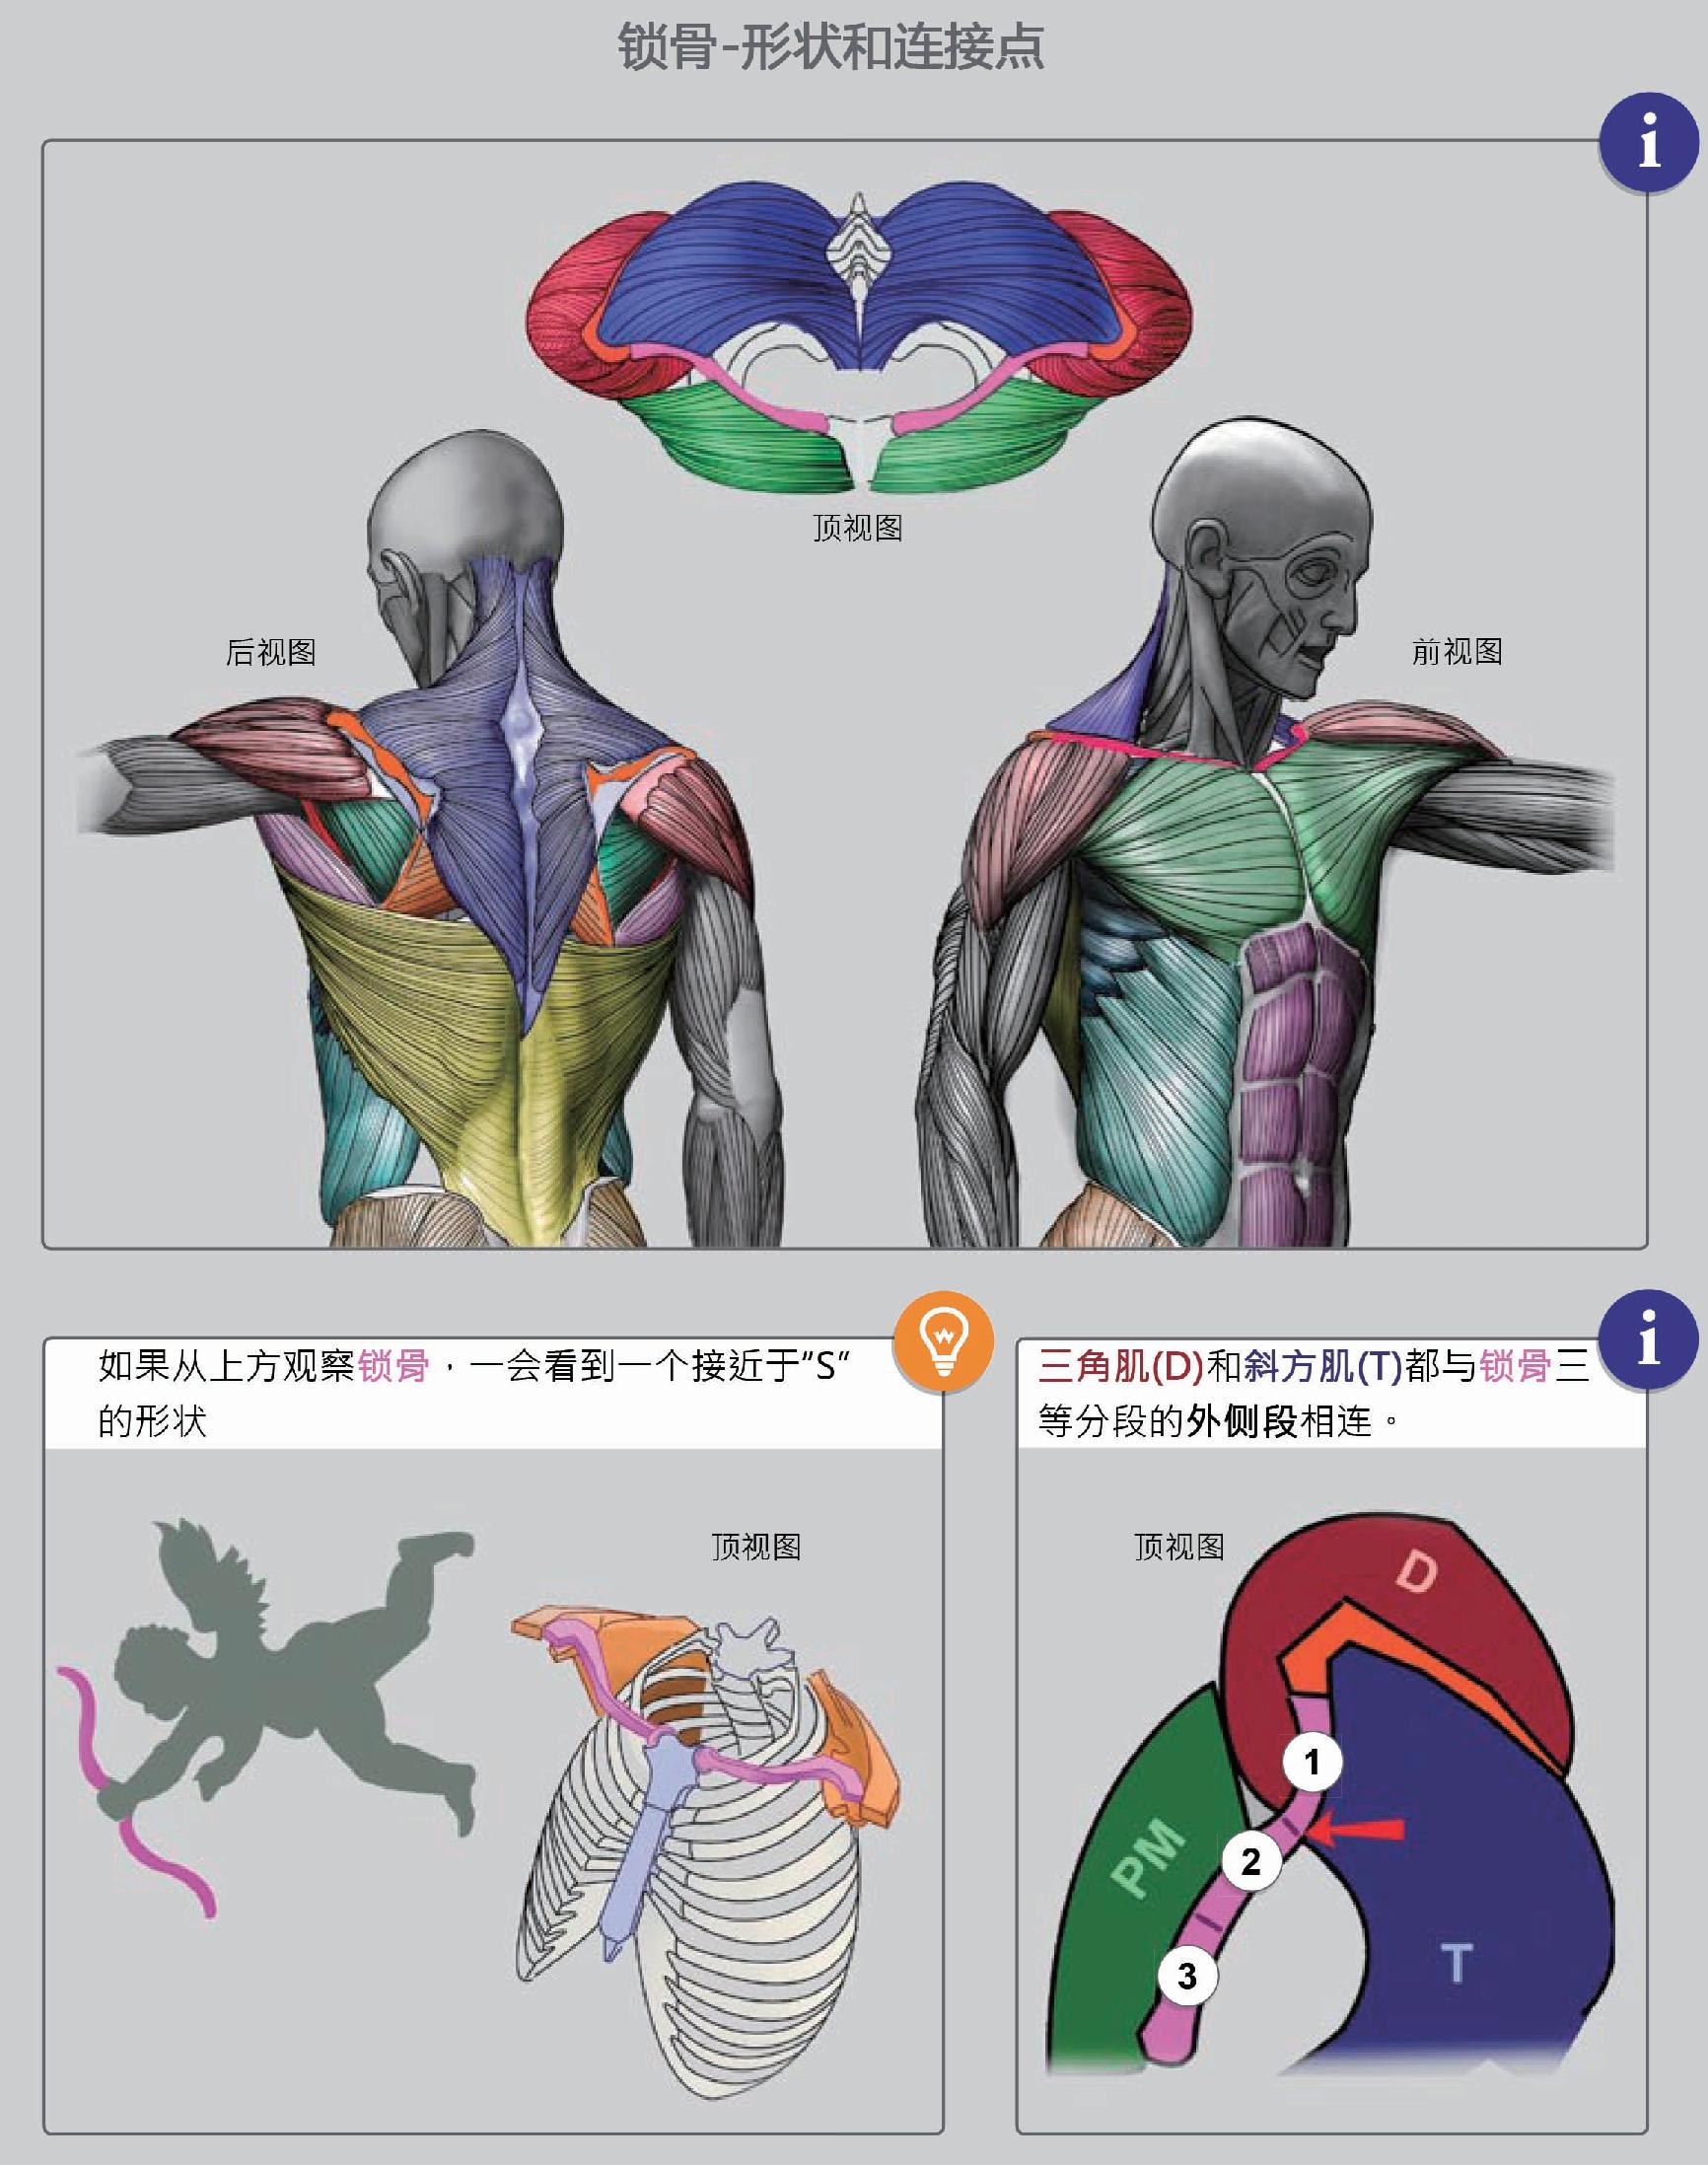 肩袖解剖详解，内附MR断层图谱